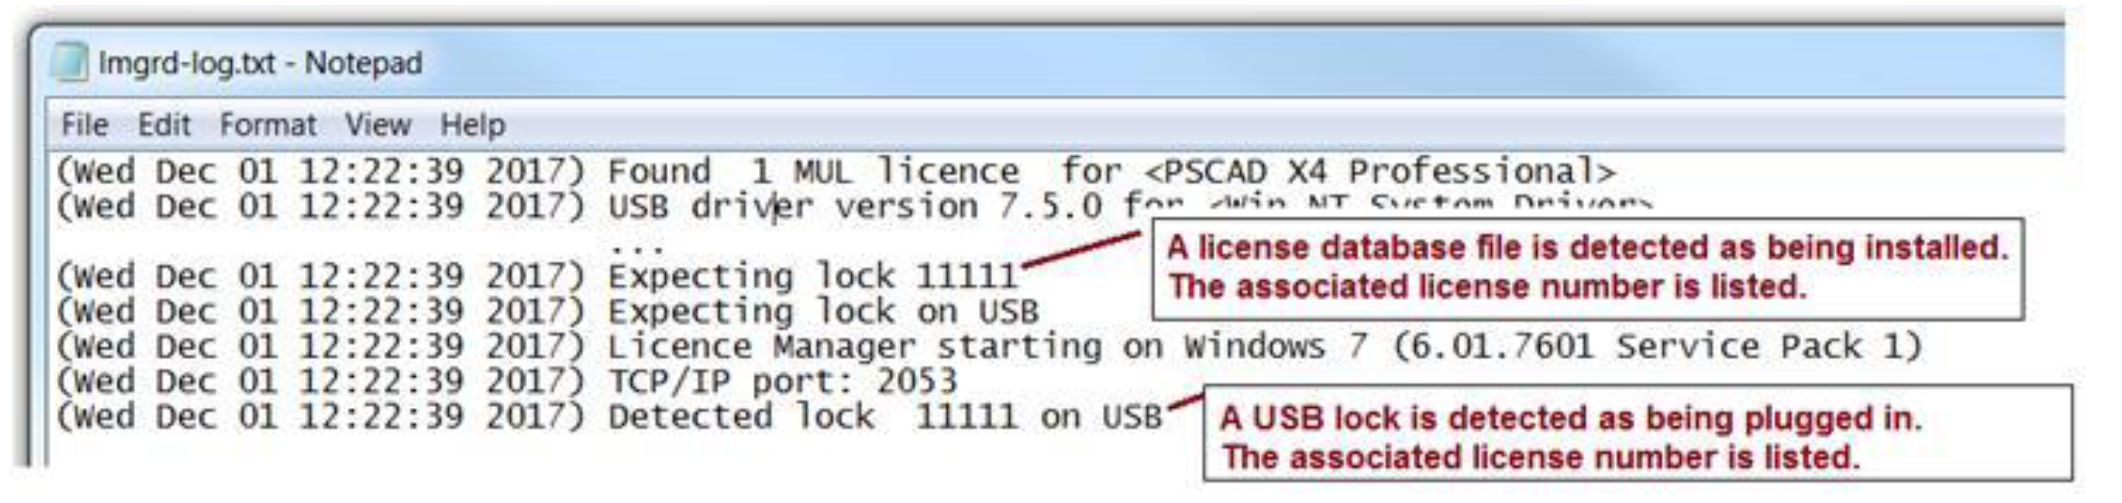 License Manager Log File - License Number.png (1.19 MB)